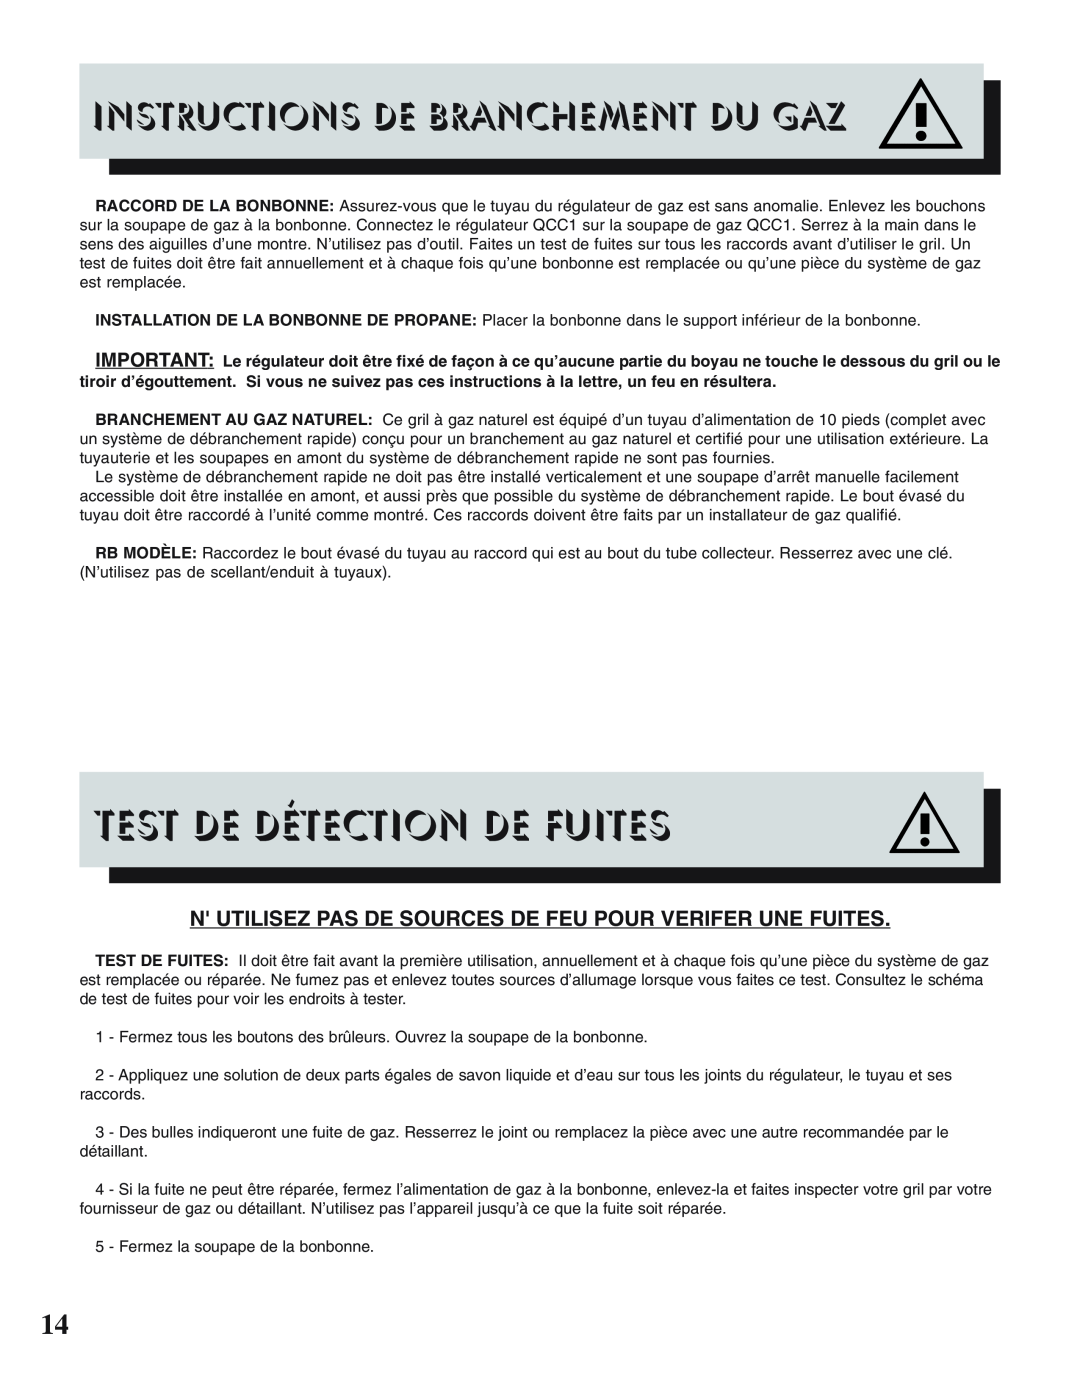 Napoleon Grills PRESTIGE II 308, 450 Test De Détection De Fuites, N Utilisez Pas De Sources De Feu Pour Verifer Une Fuites 